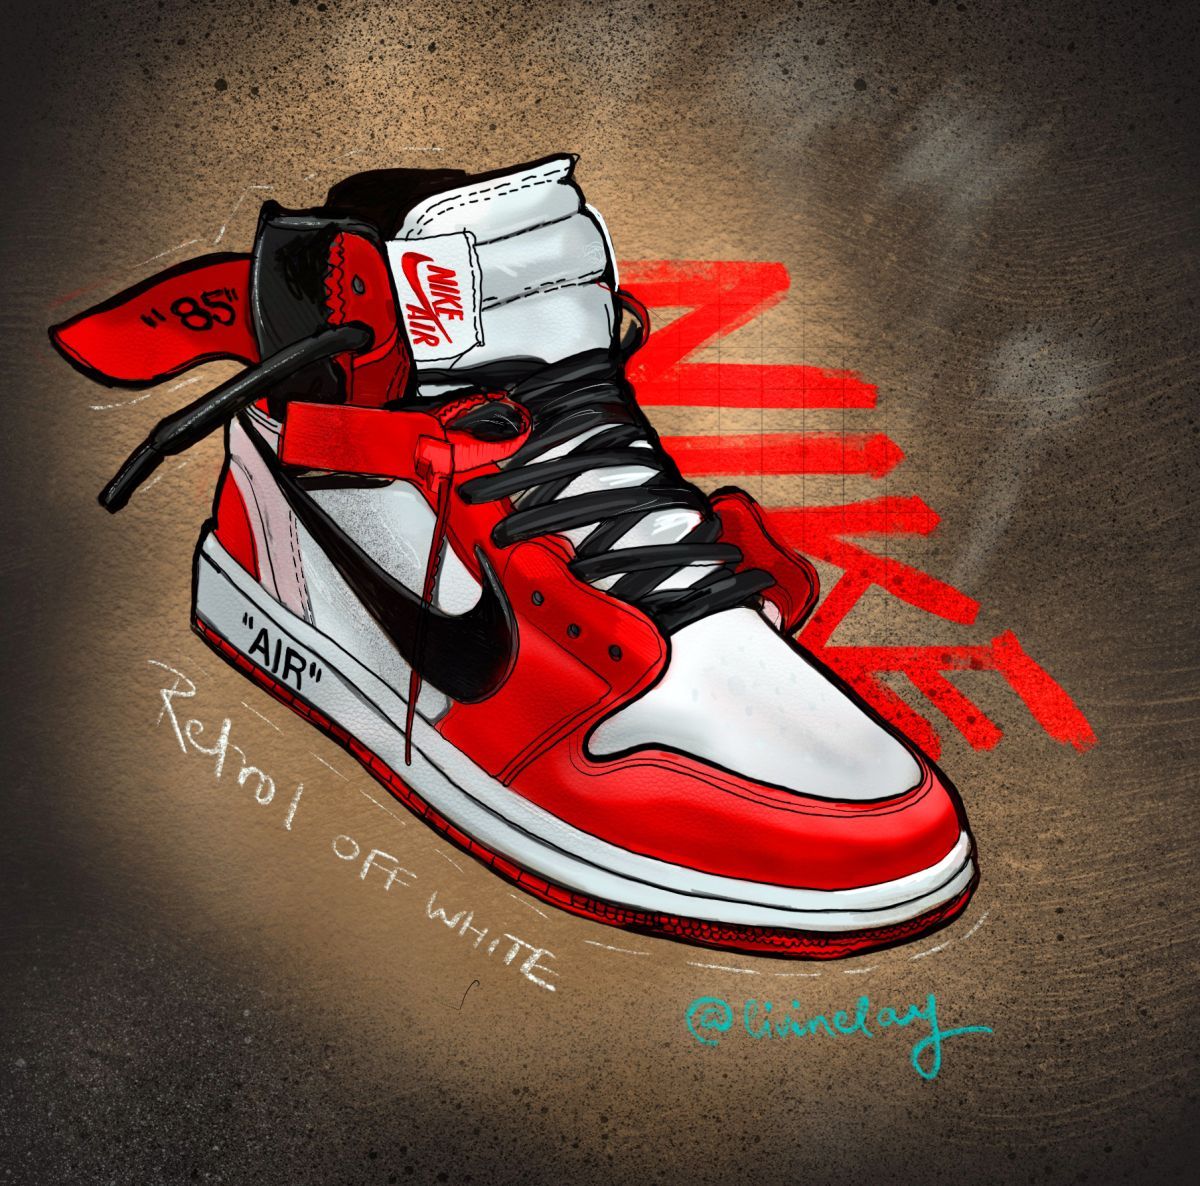 Favorite Sneakers. Jordan shoes wallpaper, Nike art, Air jordans retro